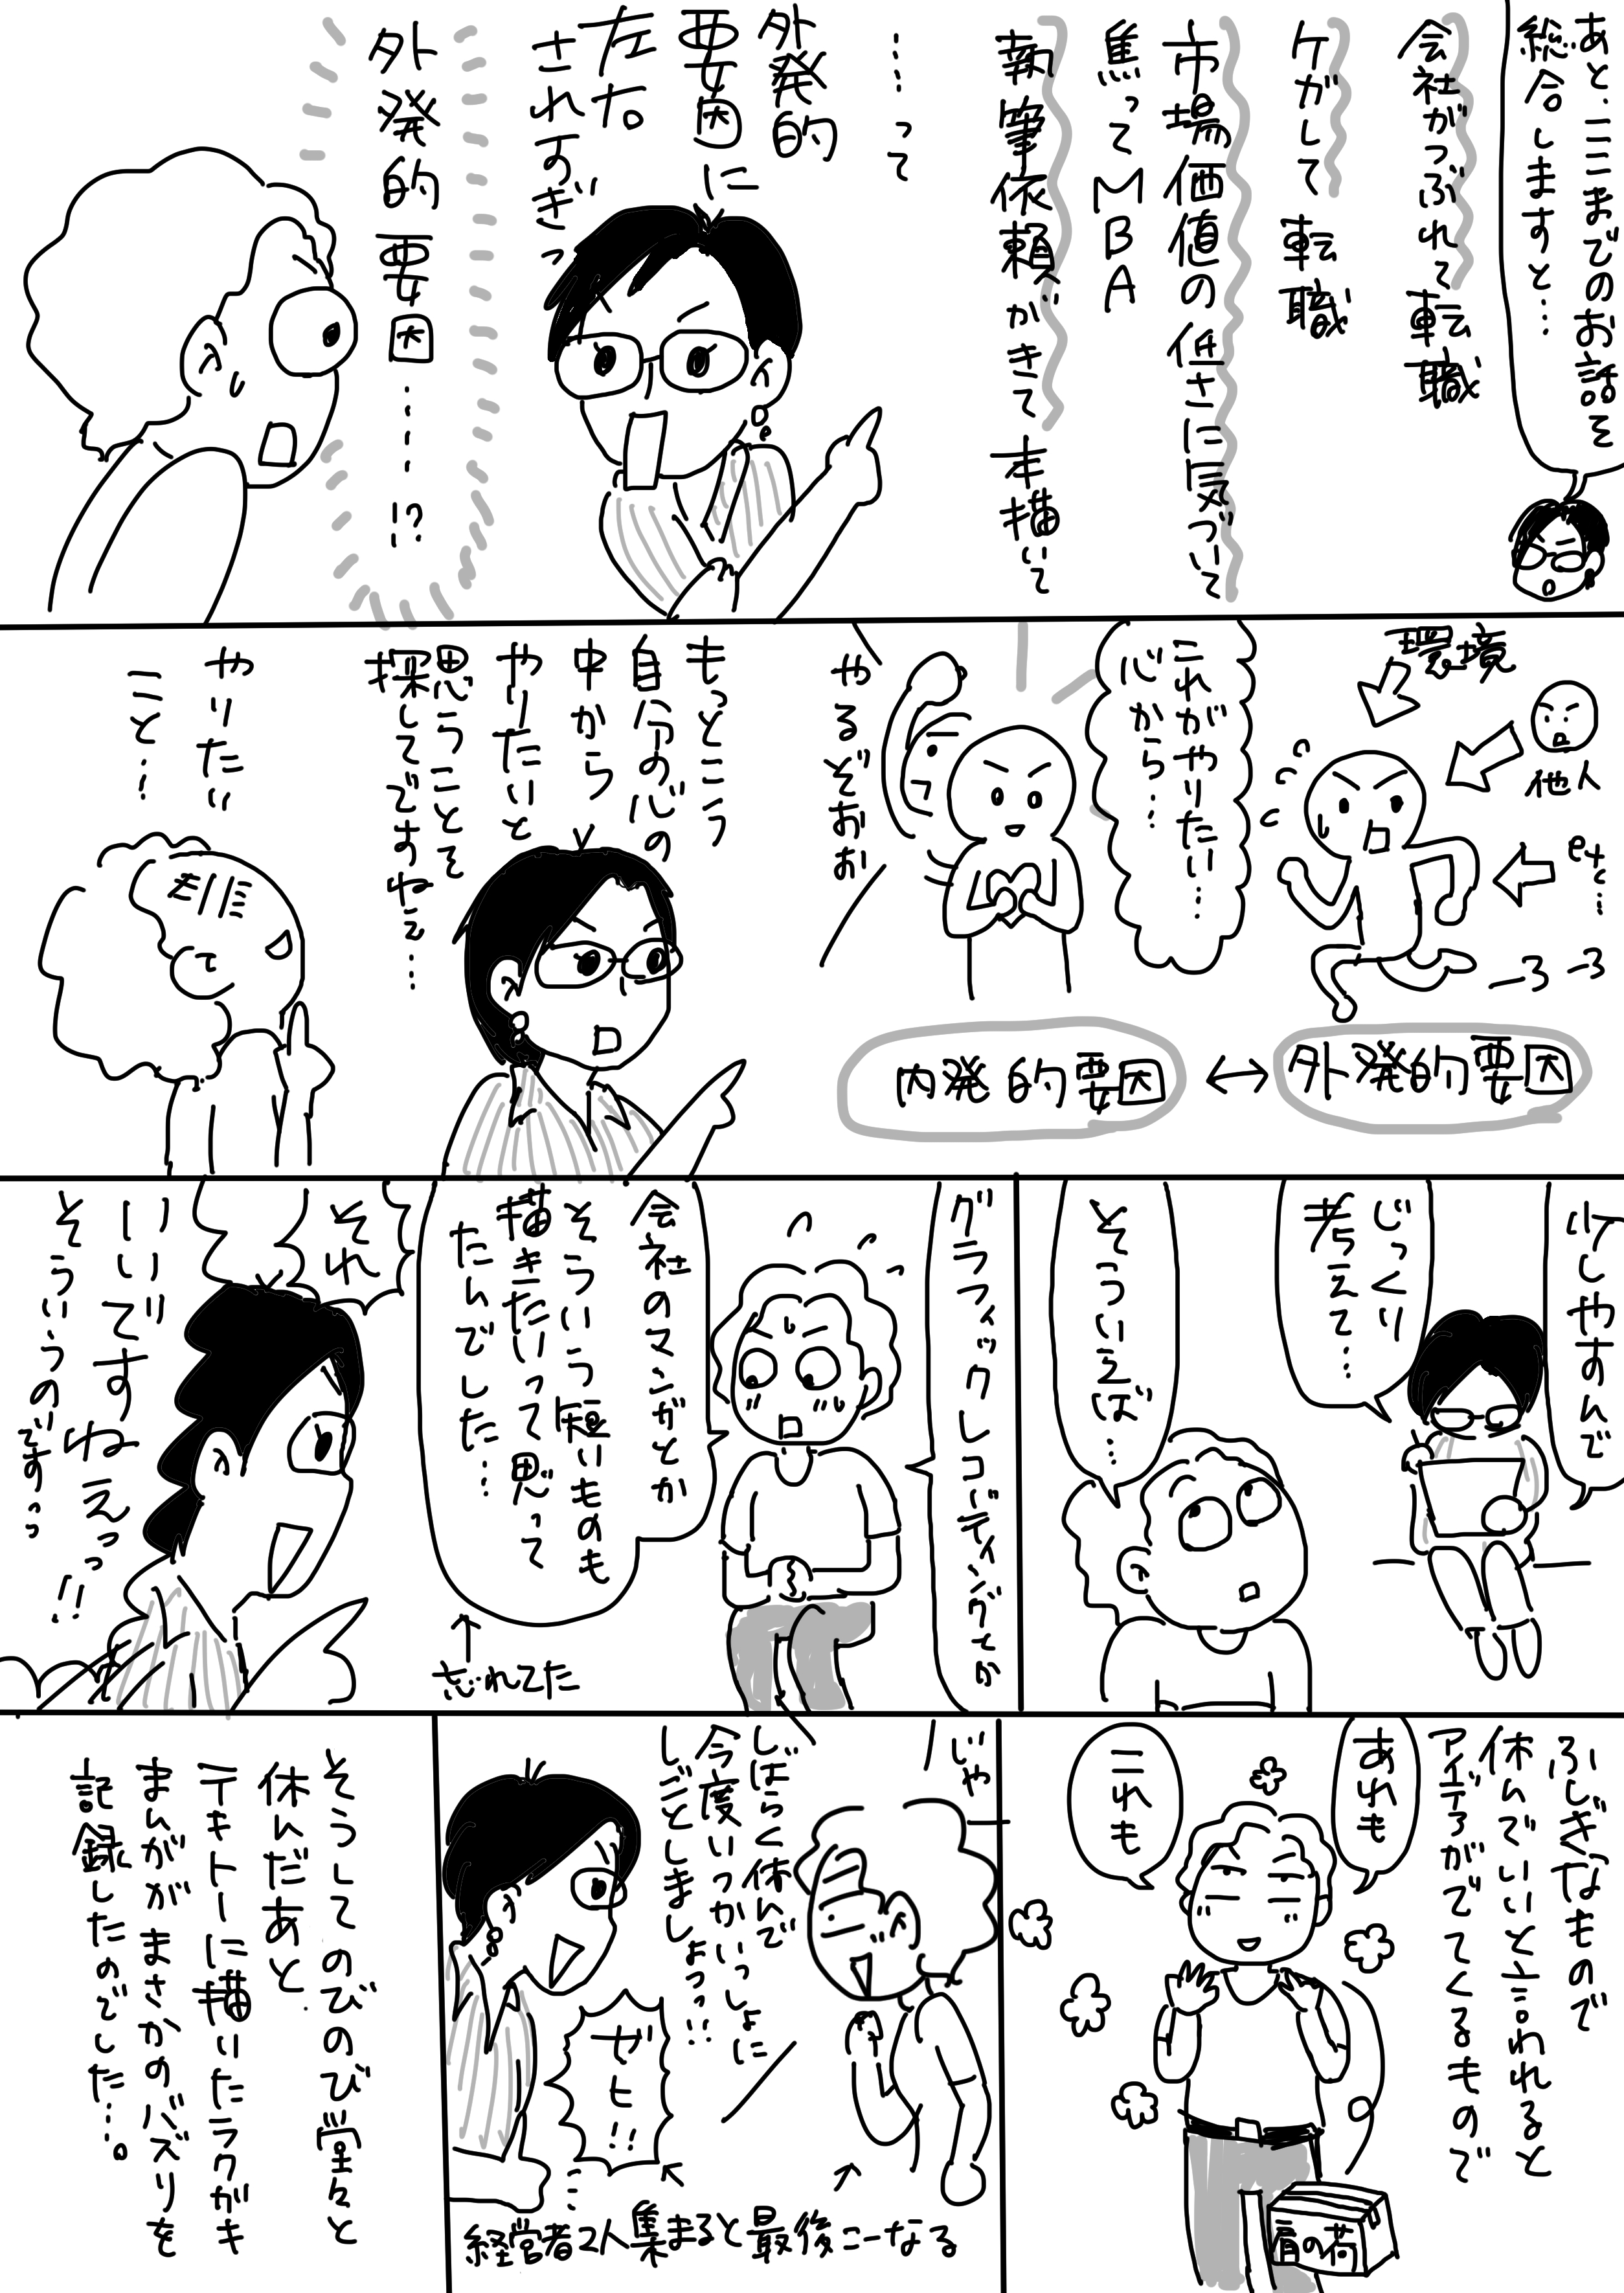 コミック9_出力_003